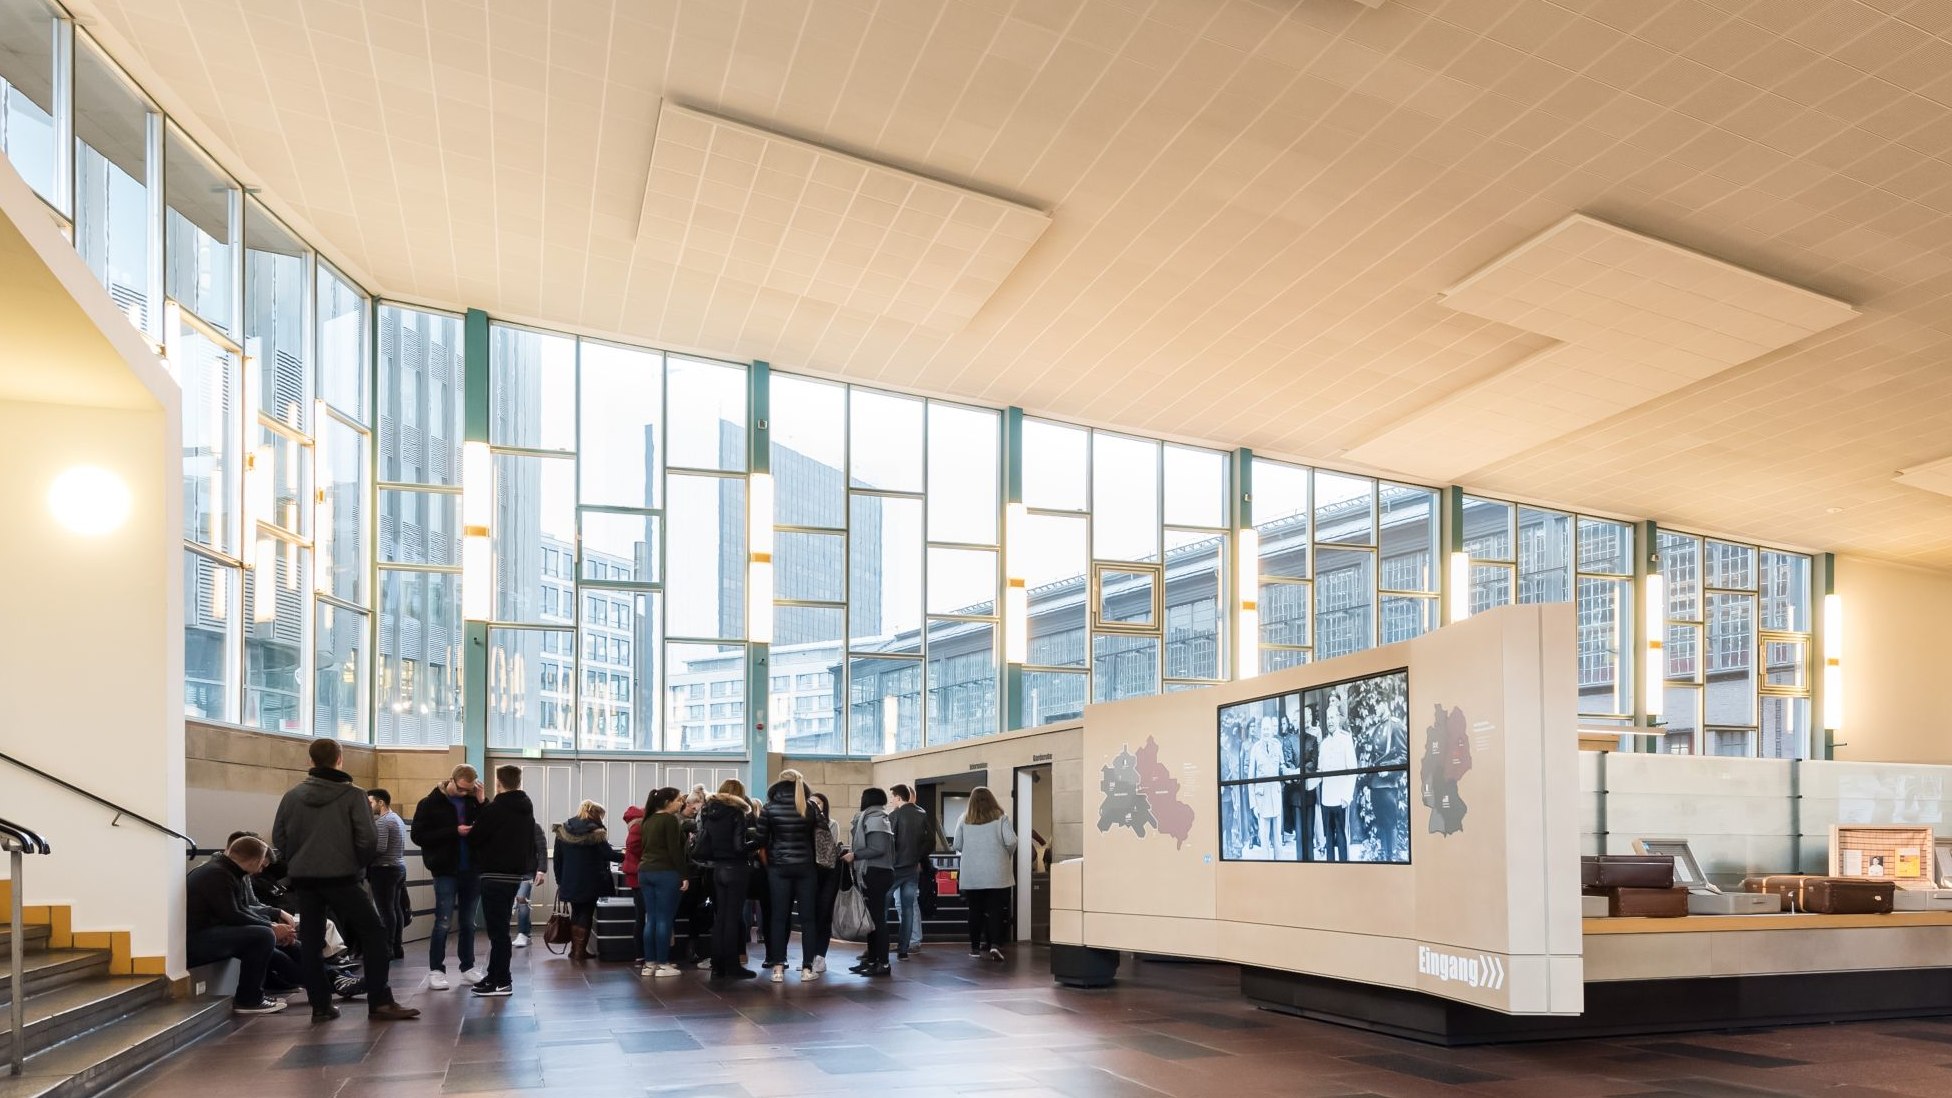 Blick in die große ehemalige Ausreisehalle und den Eingangsbereich der Ausstellung. Besucher stehen vor der großen Fensterfront, hinter der man u.a. den Bahnhof Friedrichstraße sieht